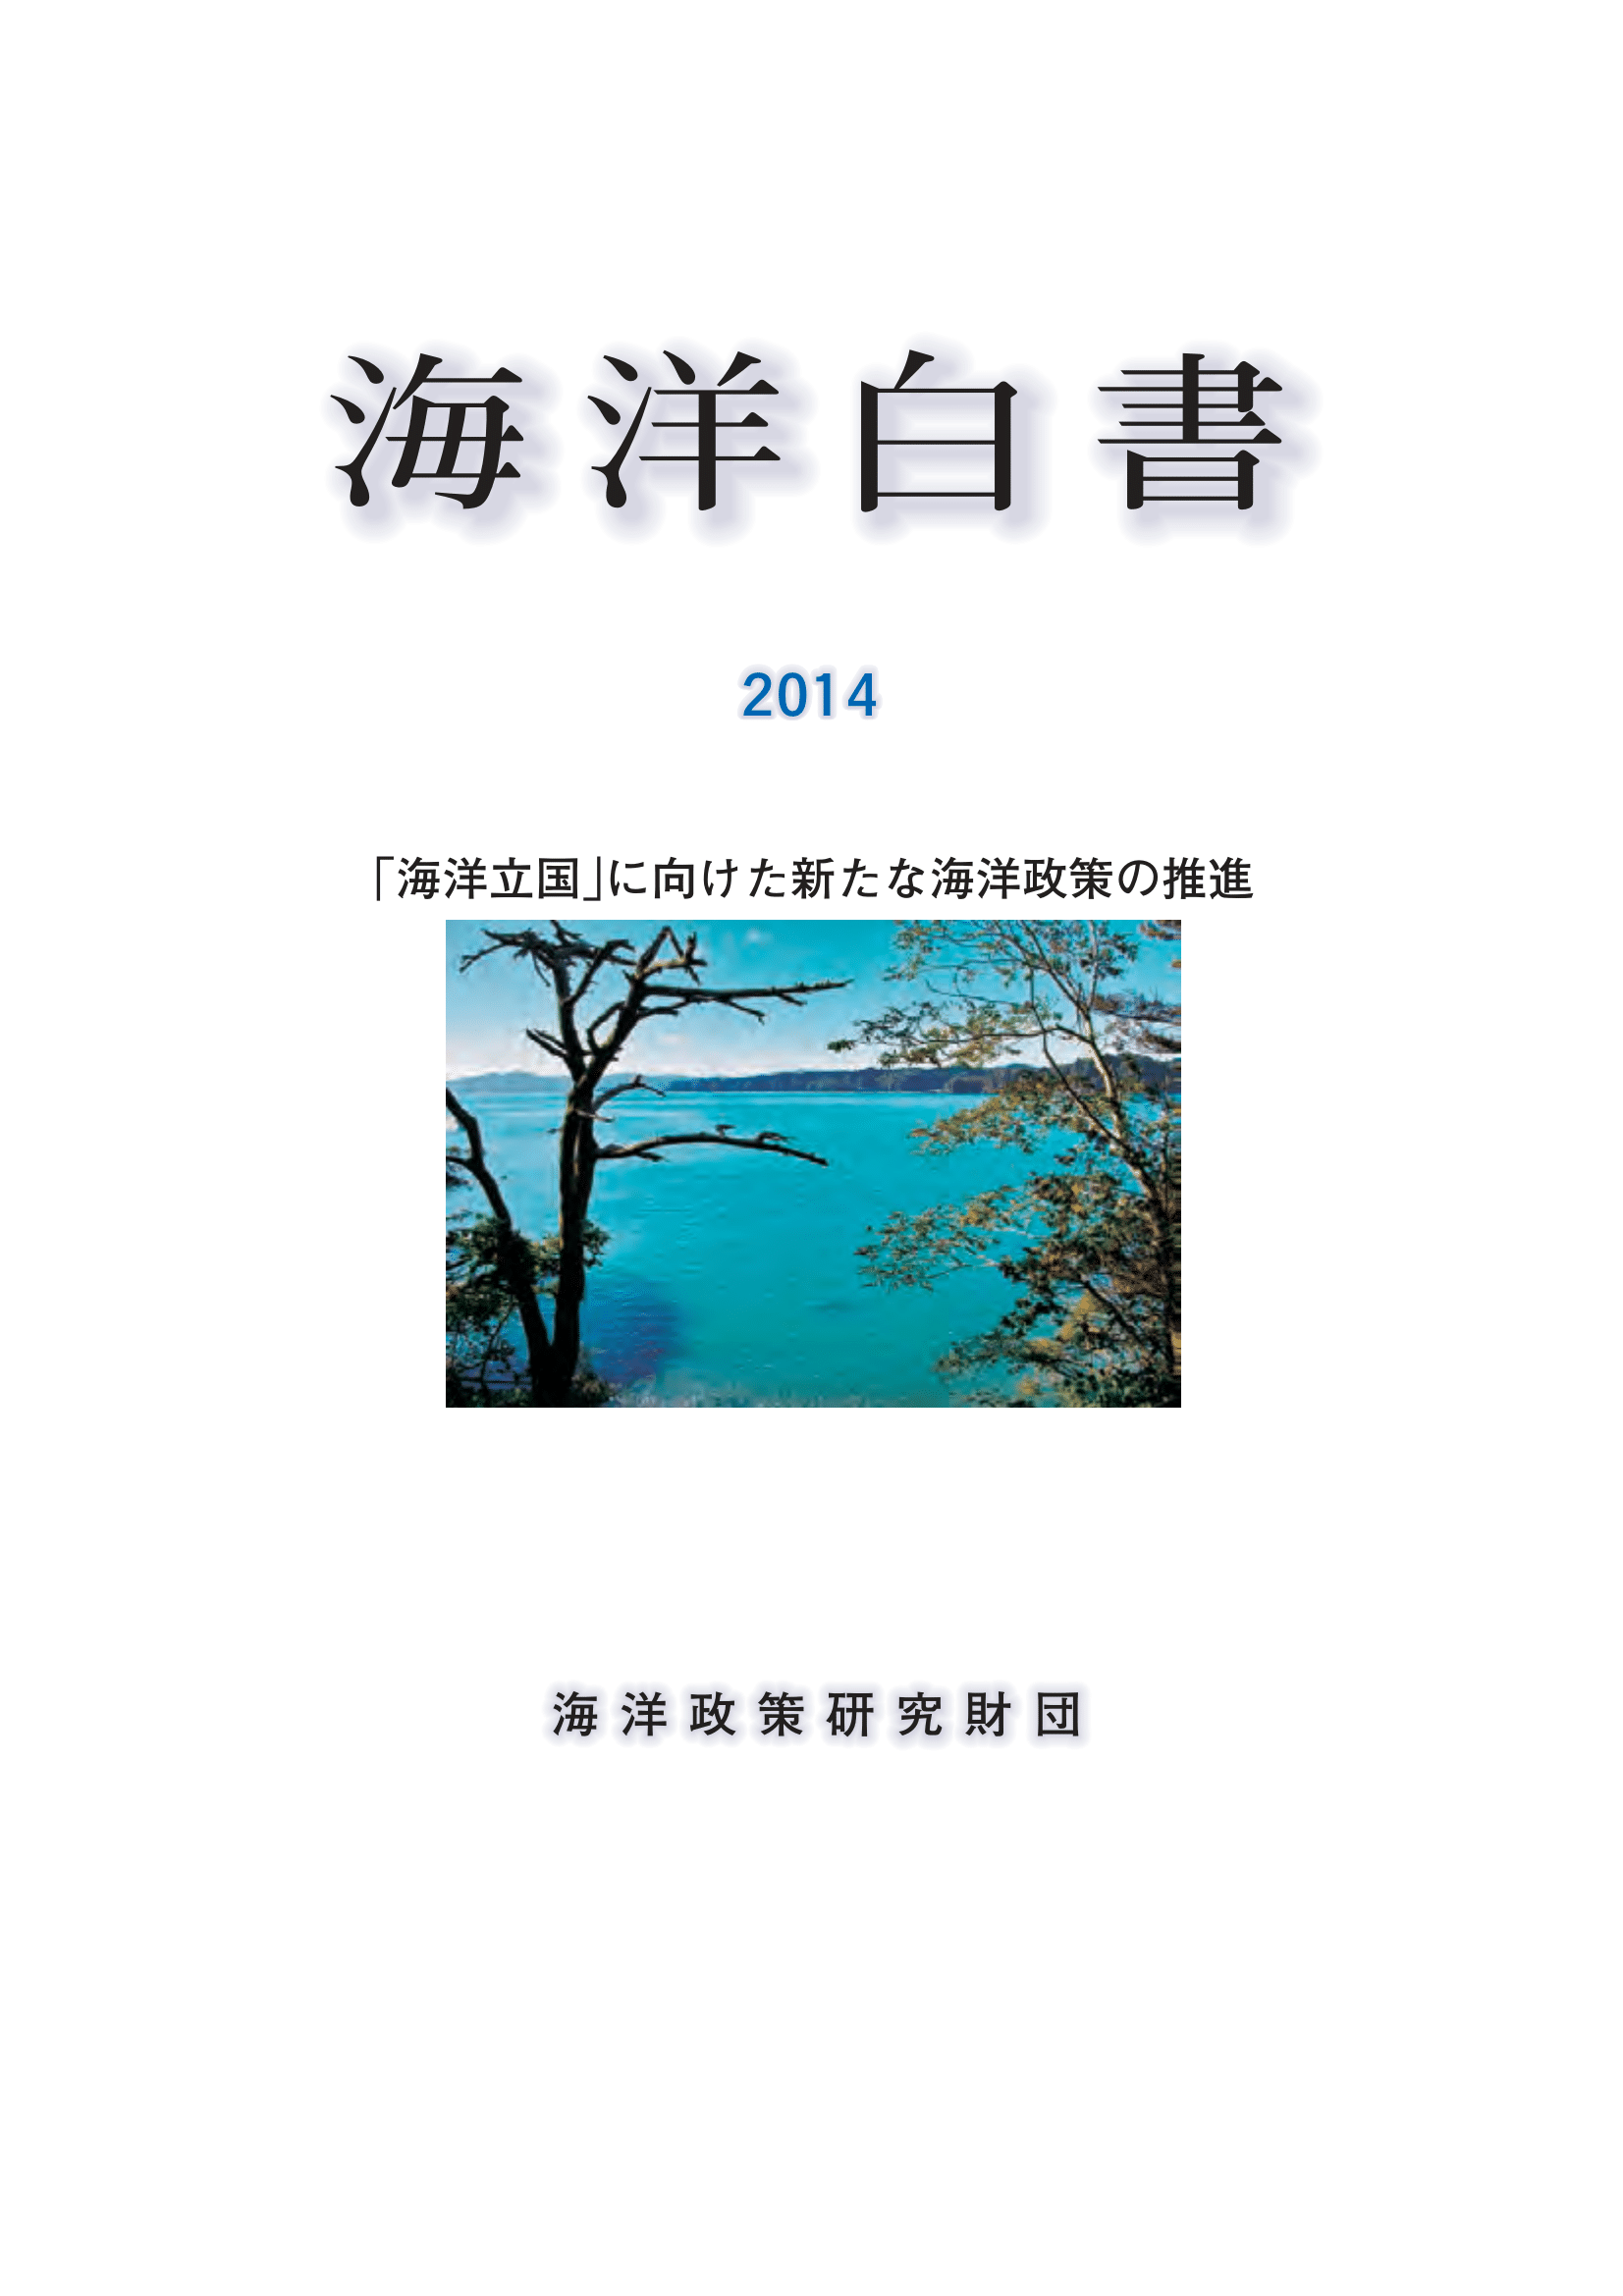 海洋白書2014「海洋立国」に向けた新たな海洋政策の推進